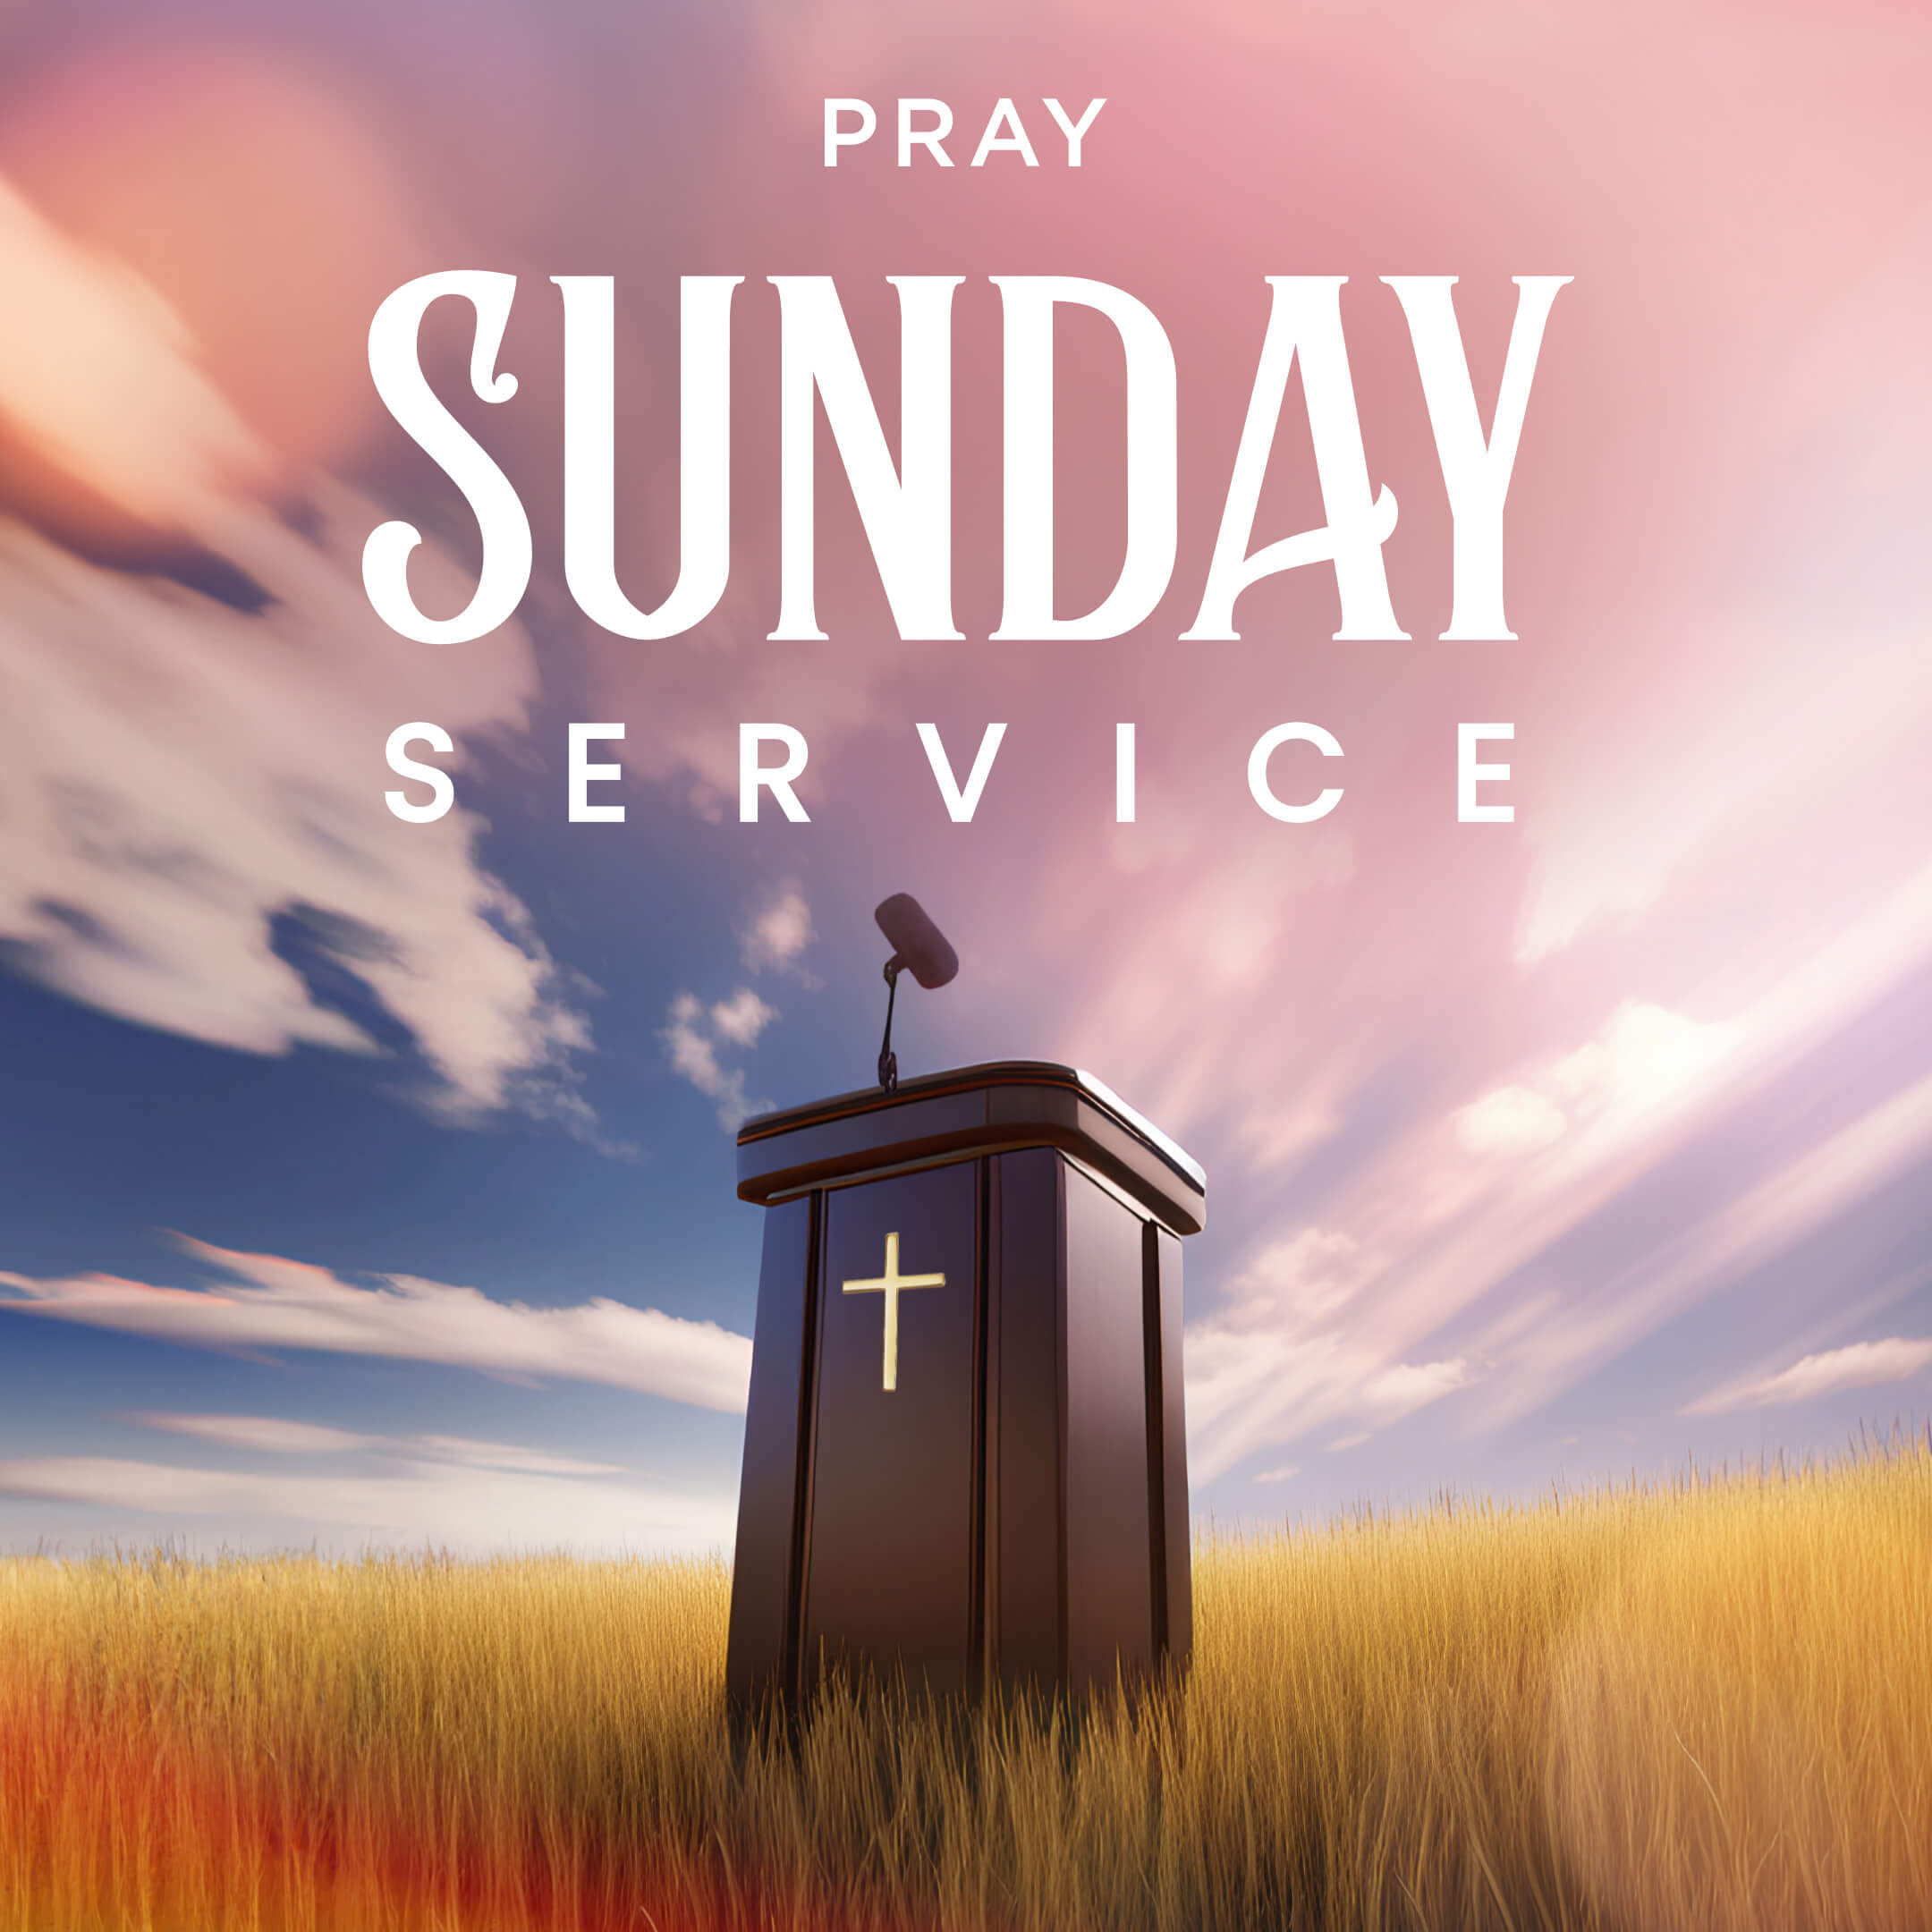 Jordan Brice on Sunday Service